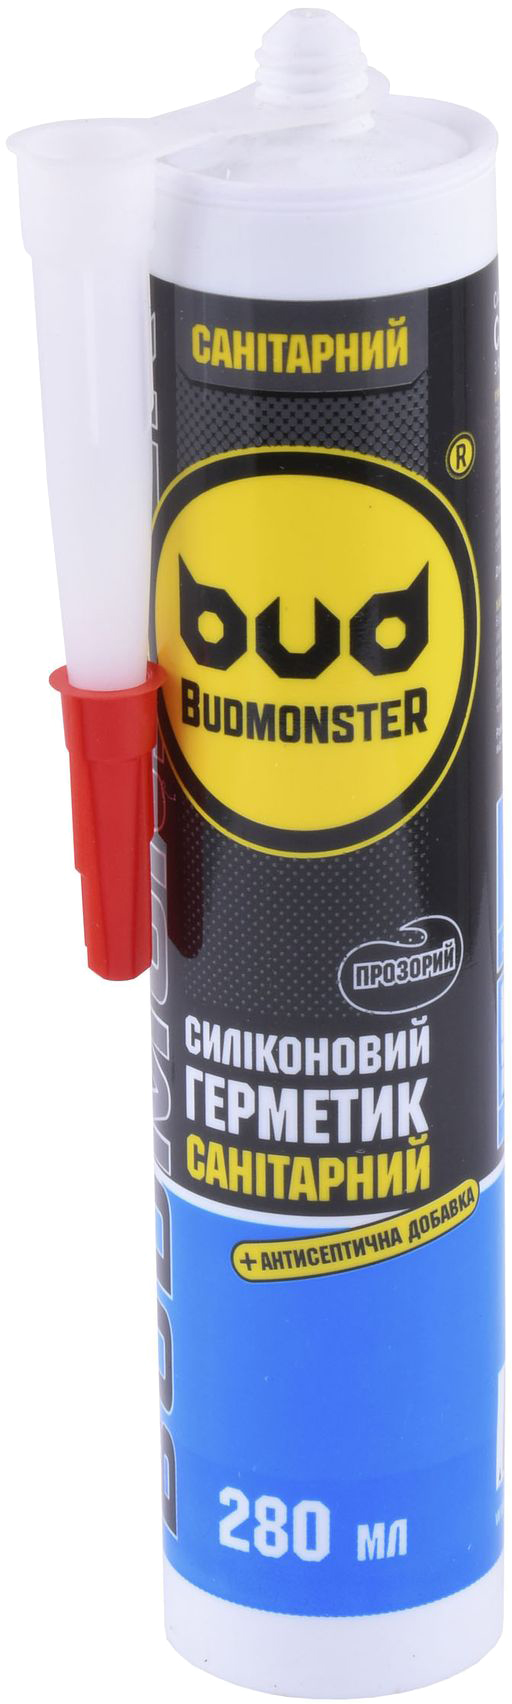 Отзывы герметик на силиконовой основе санитарный Budmonster 280мл прозрачный в Украине